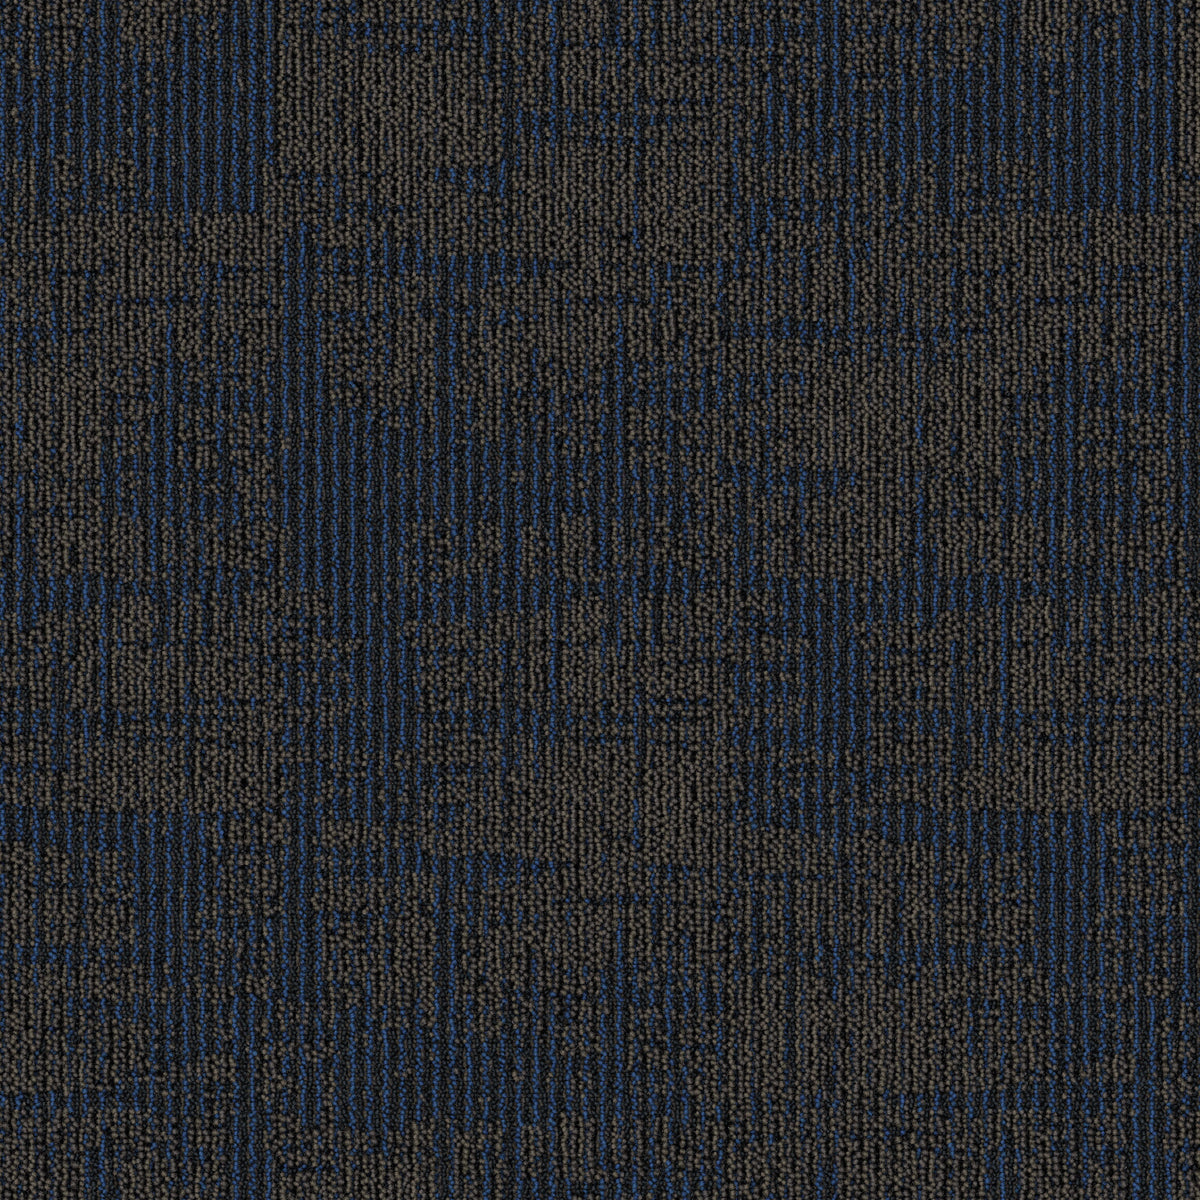 Mohawk Group - Artisanal - Threaded Craft - Carpet Tile - Twilight